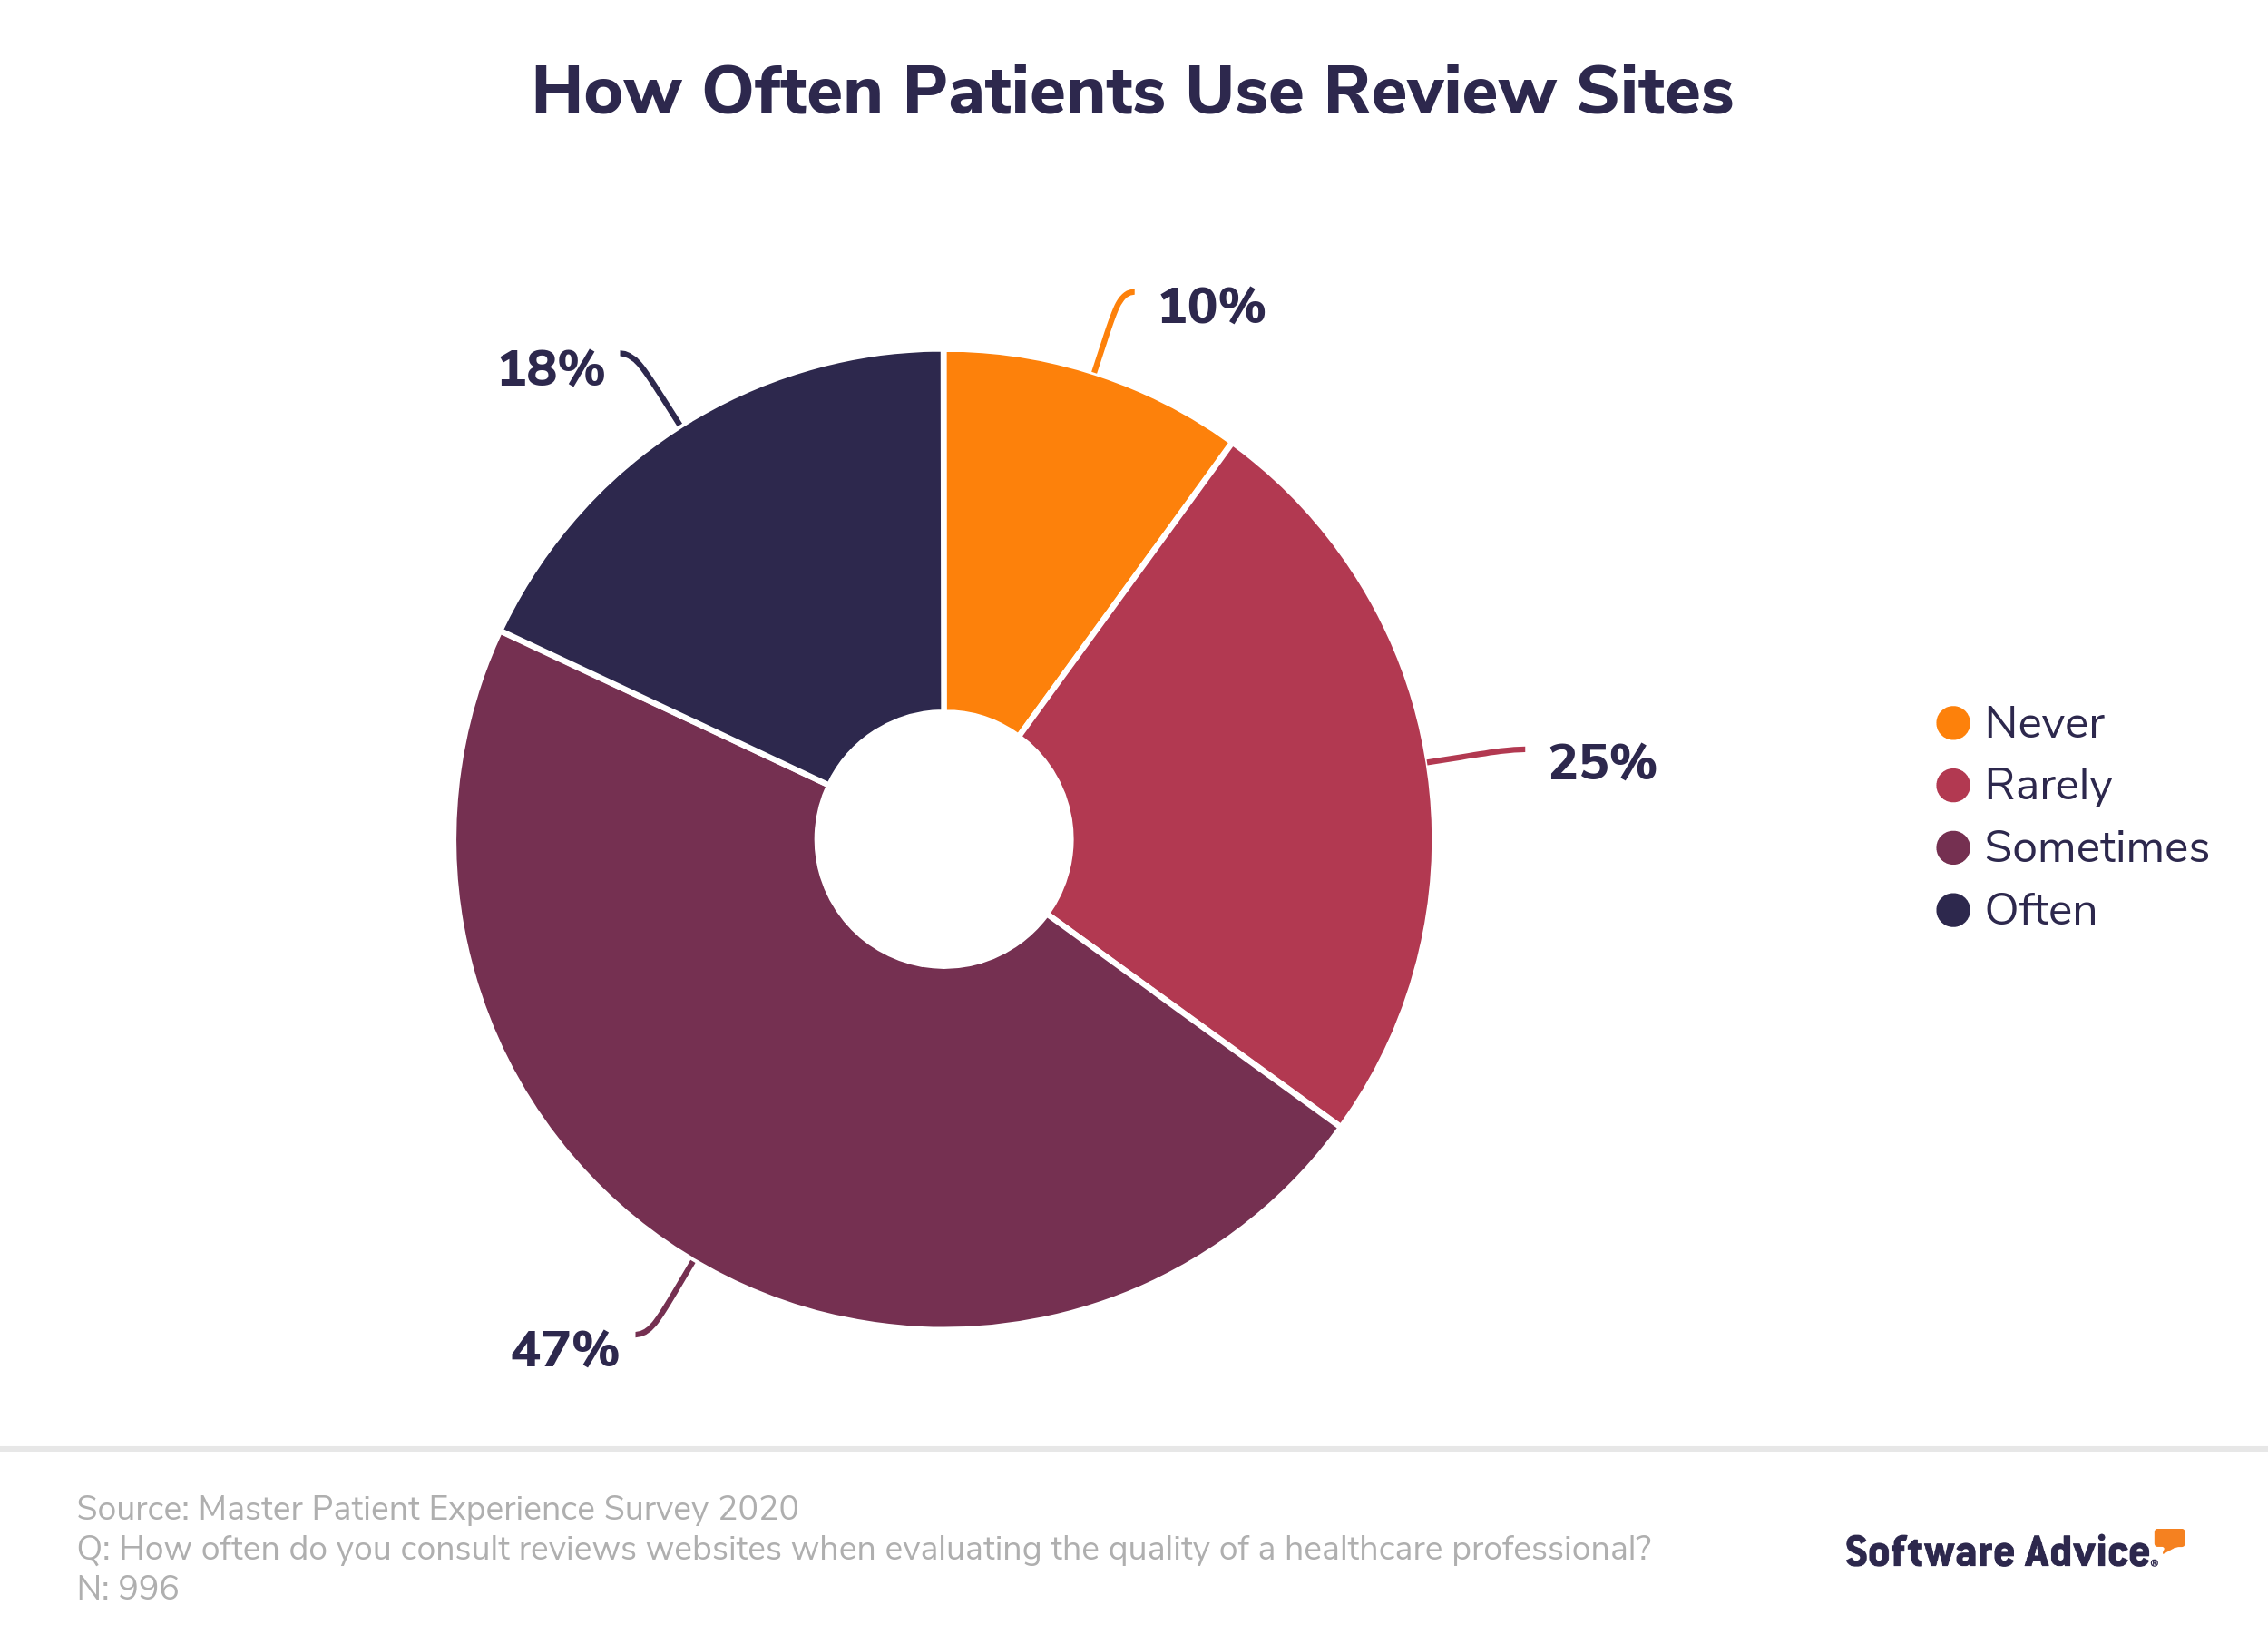 patient’s digital journey in healthcare